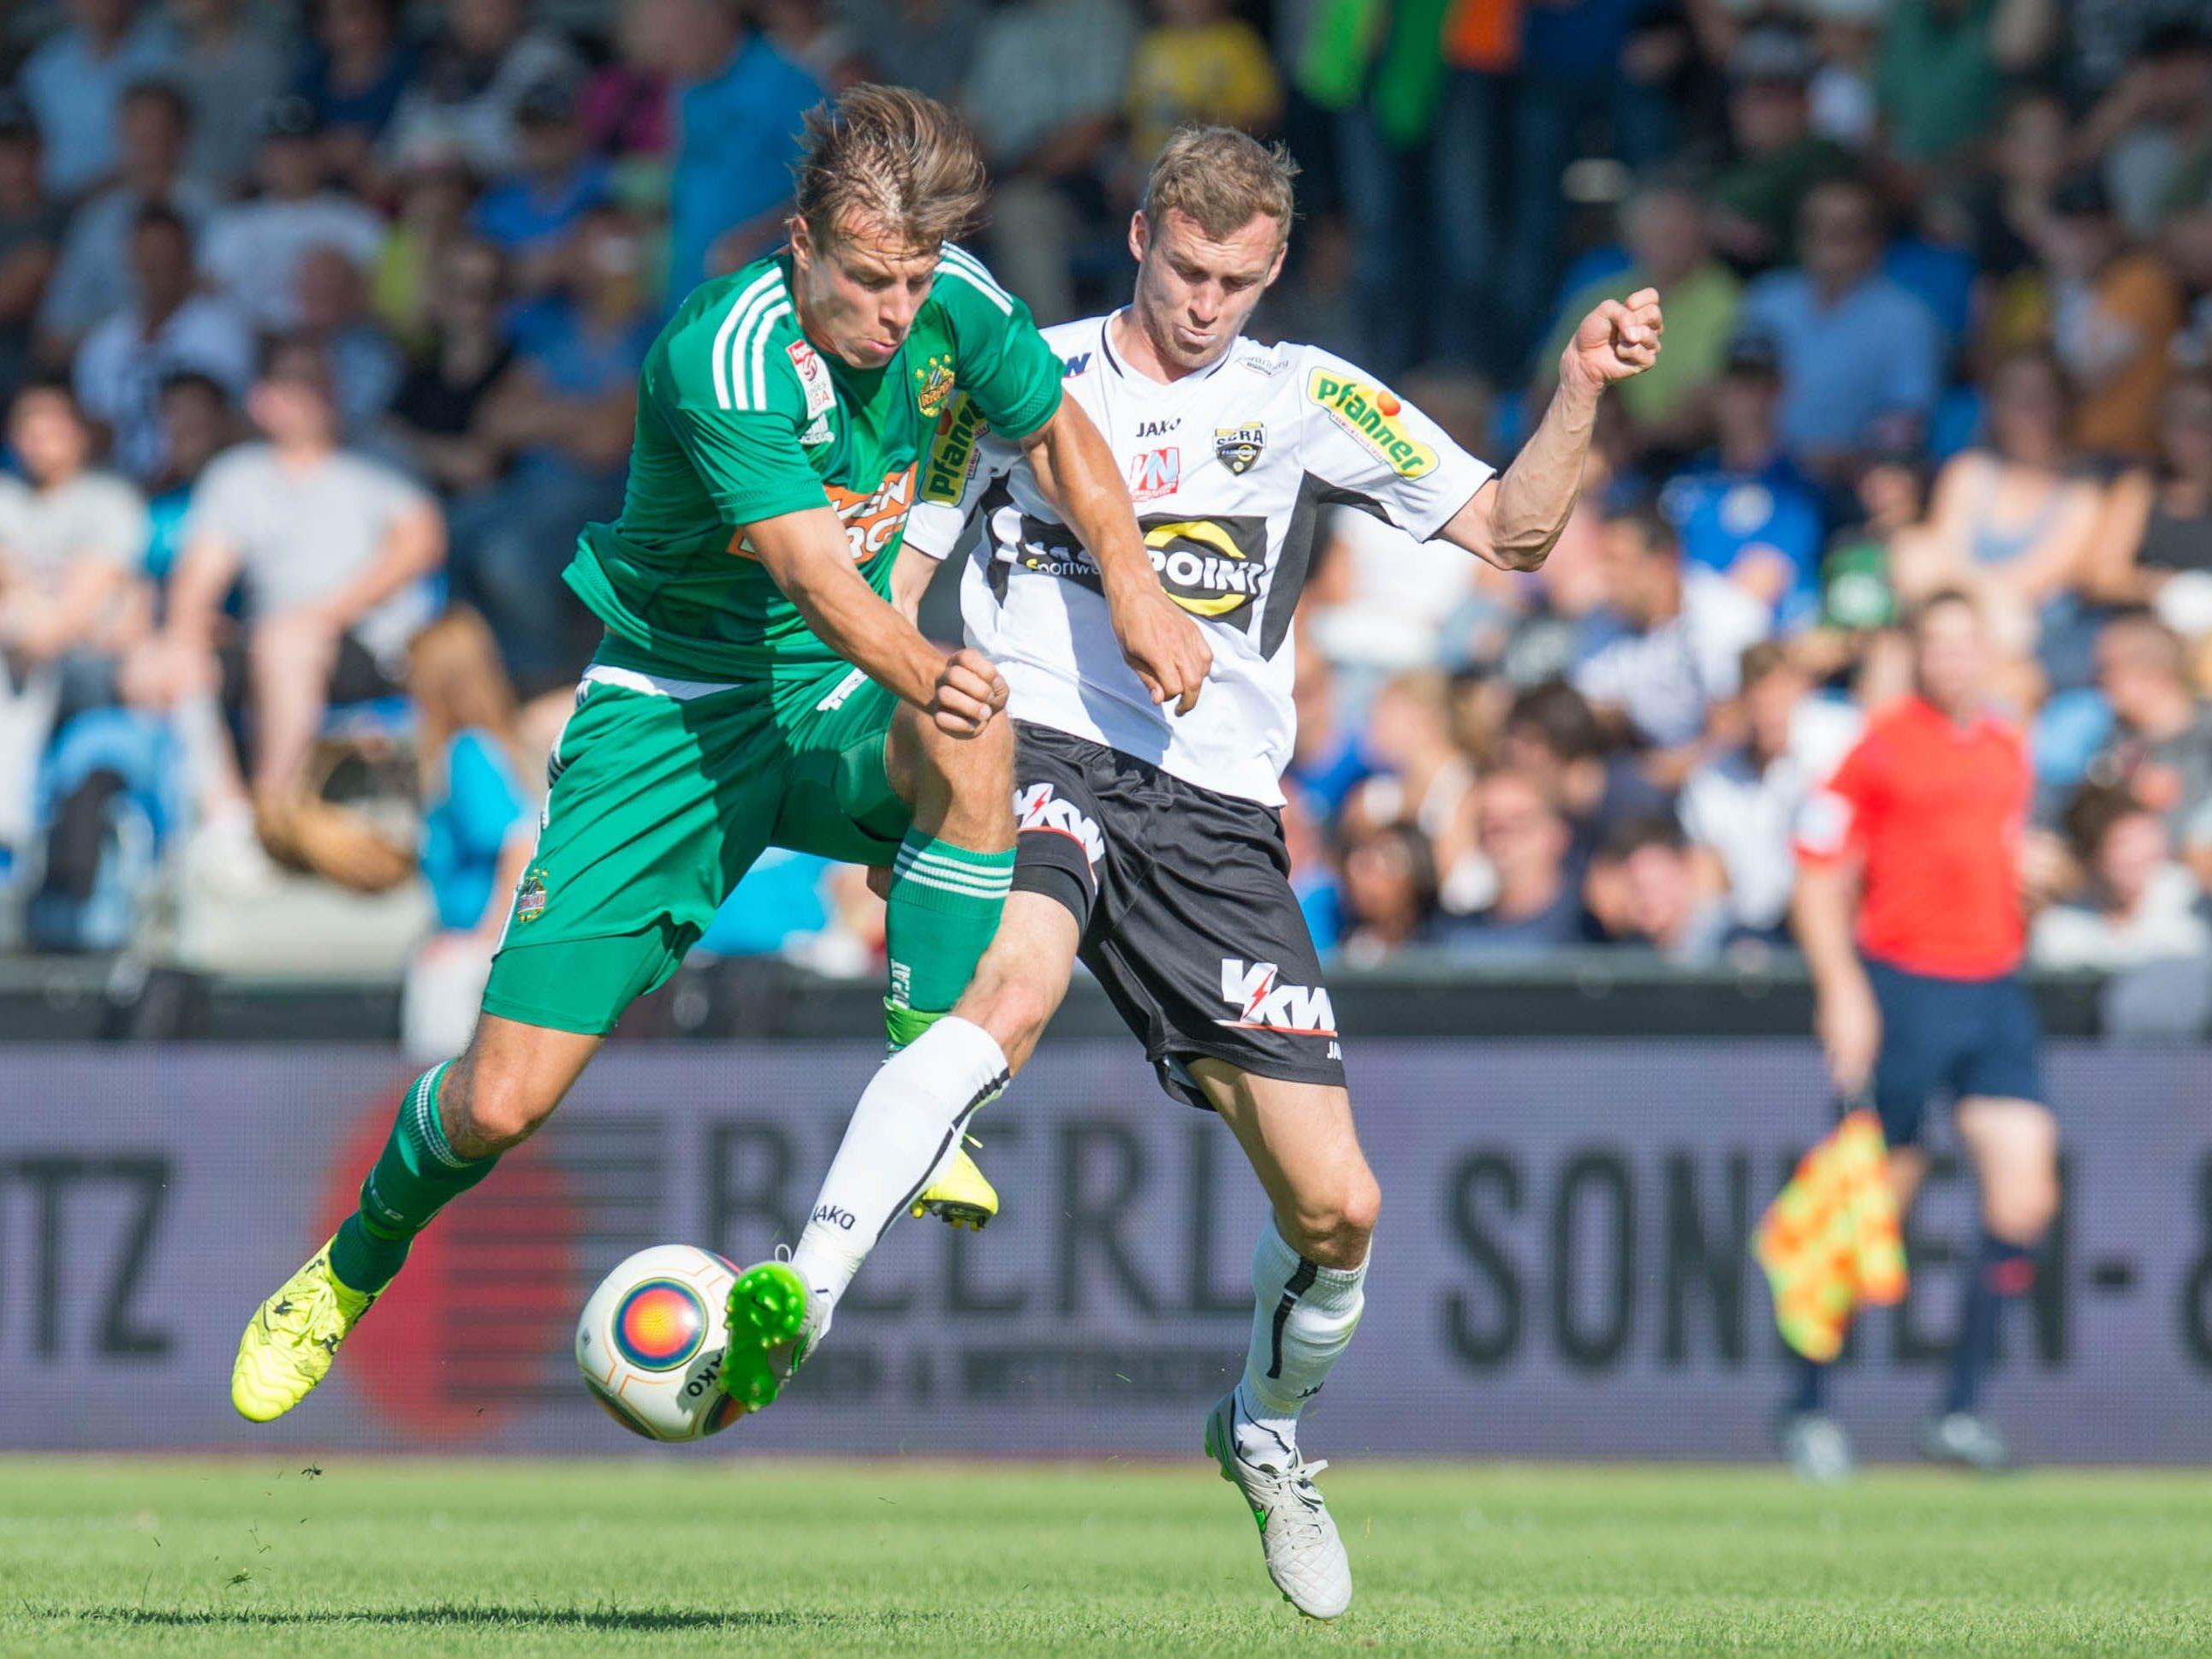 Rapid empfängt Altach in der 17. Bundesligarunde.